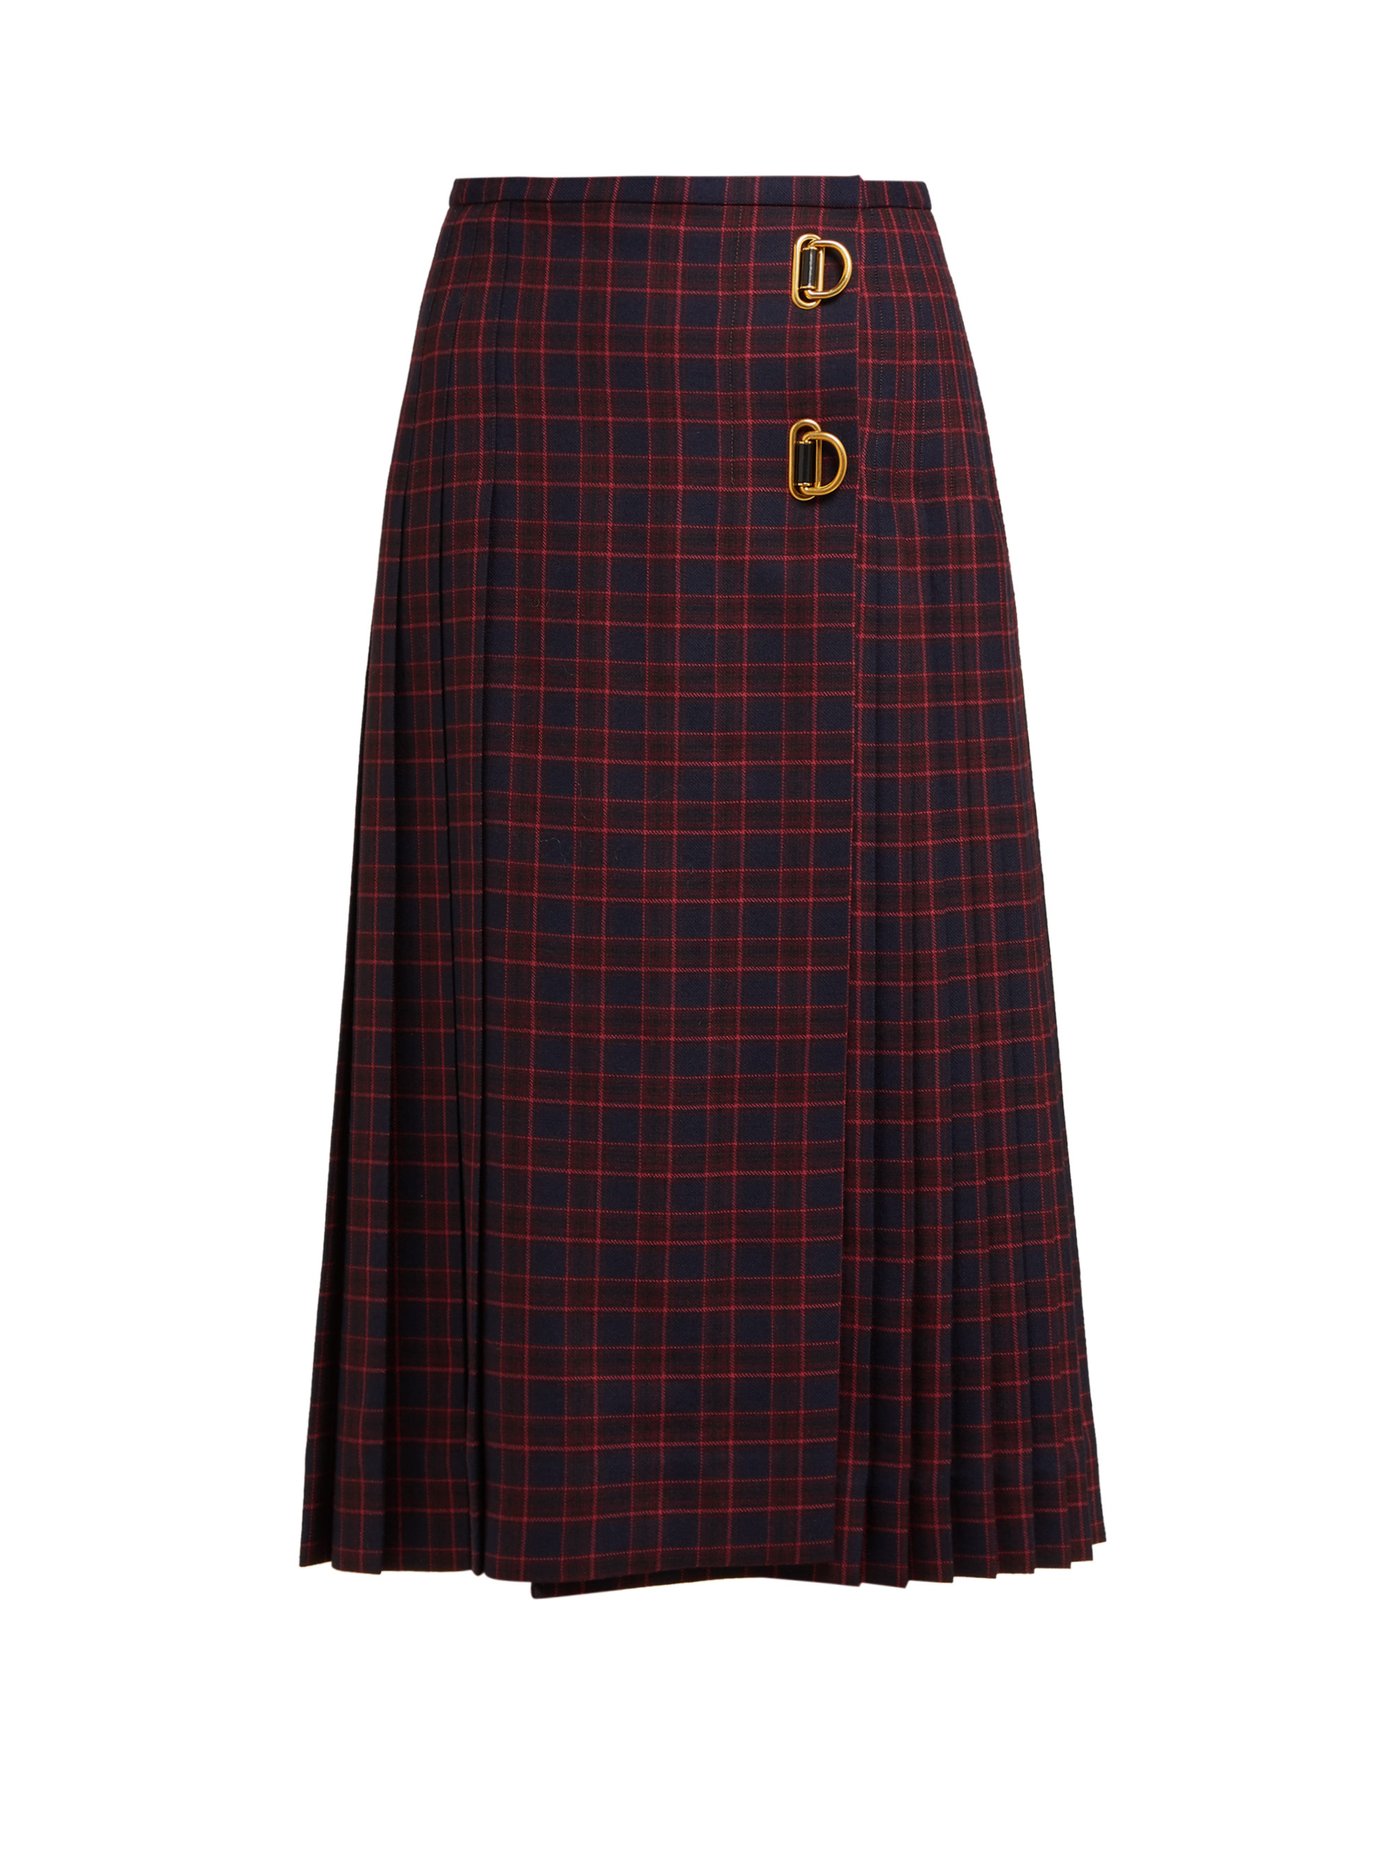 burberry tartan wool skirt